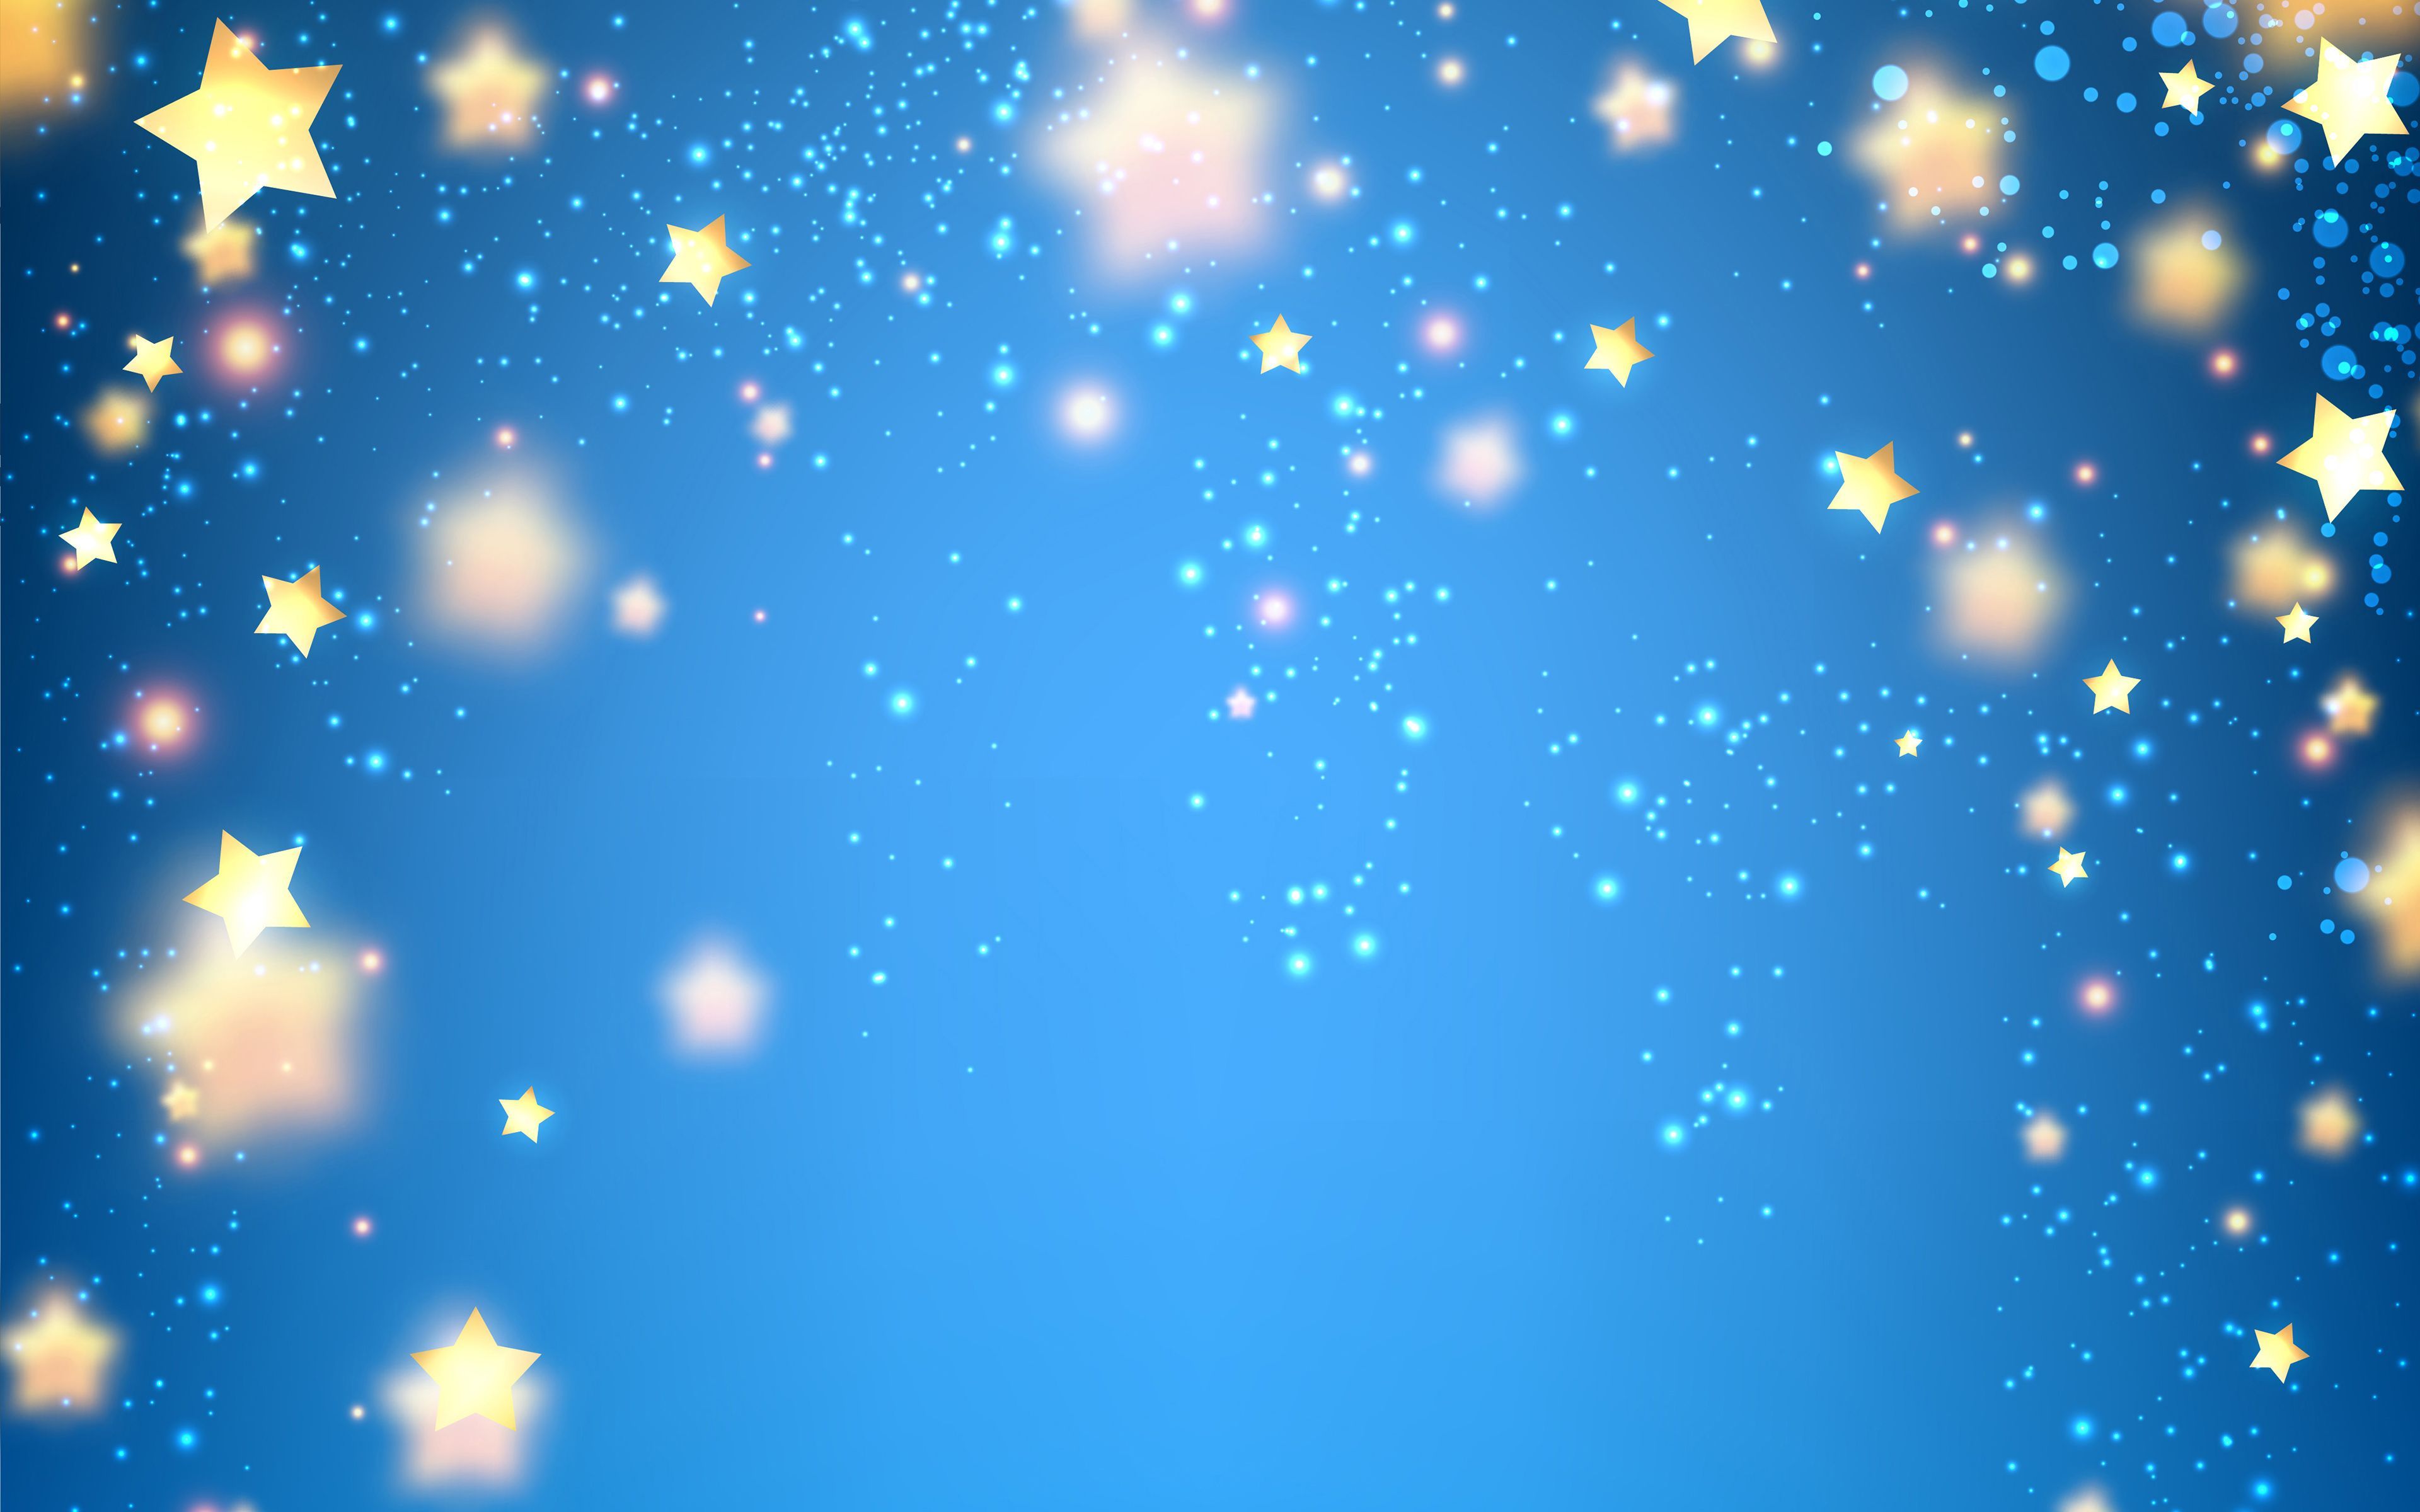 Фон нежно голубой со звездами